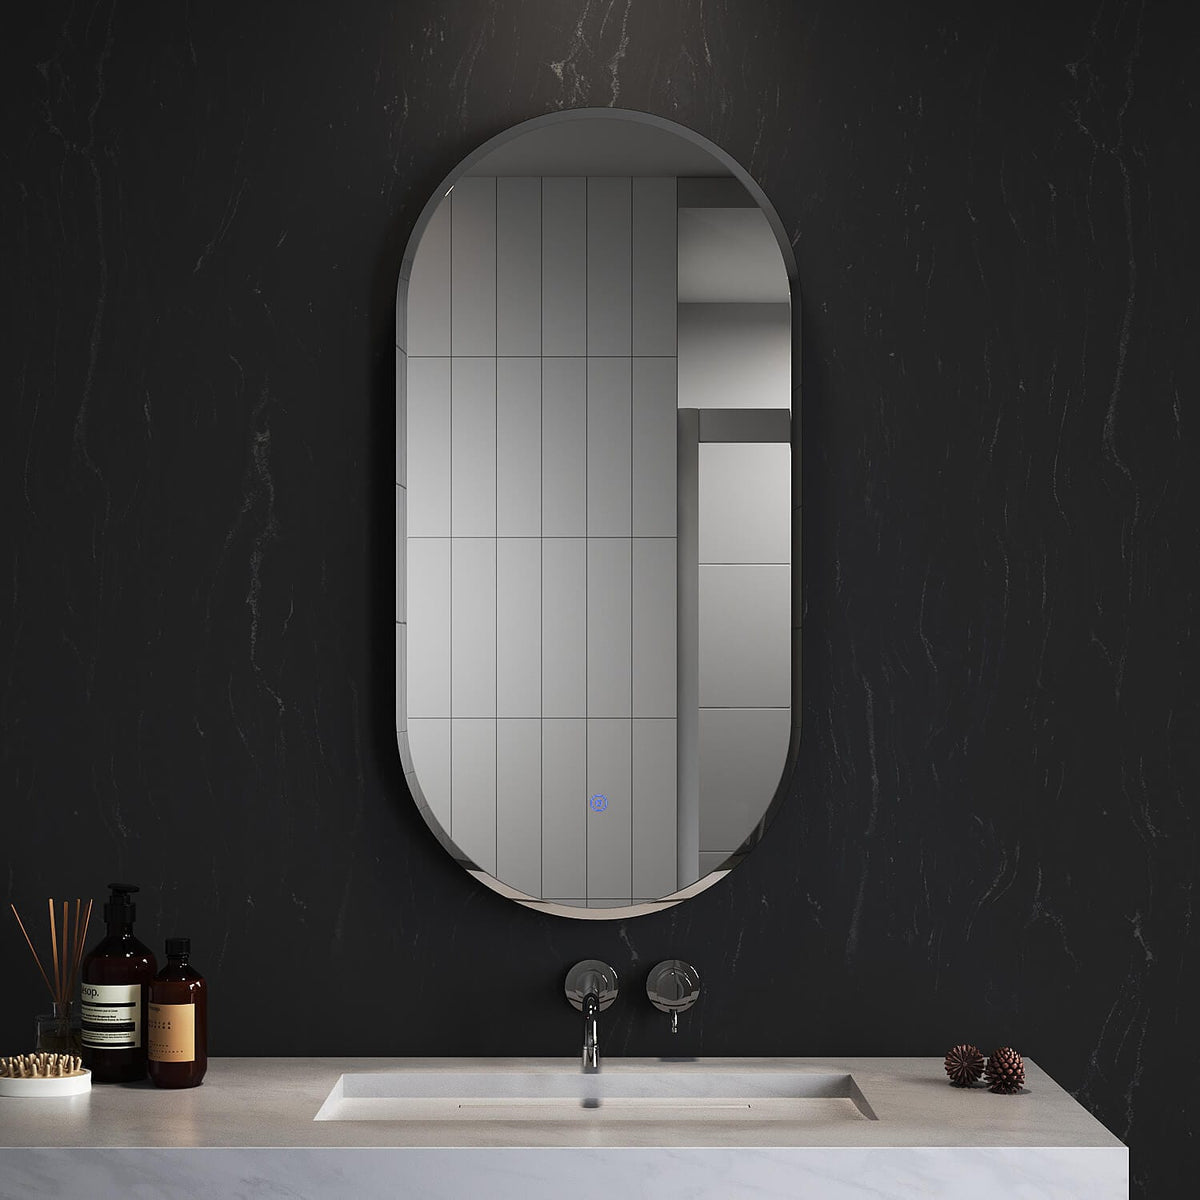 ELEGANT SHOWERS Anti-Fog Oval LED Illuminated Bathroom Mirror